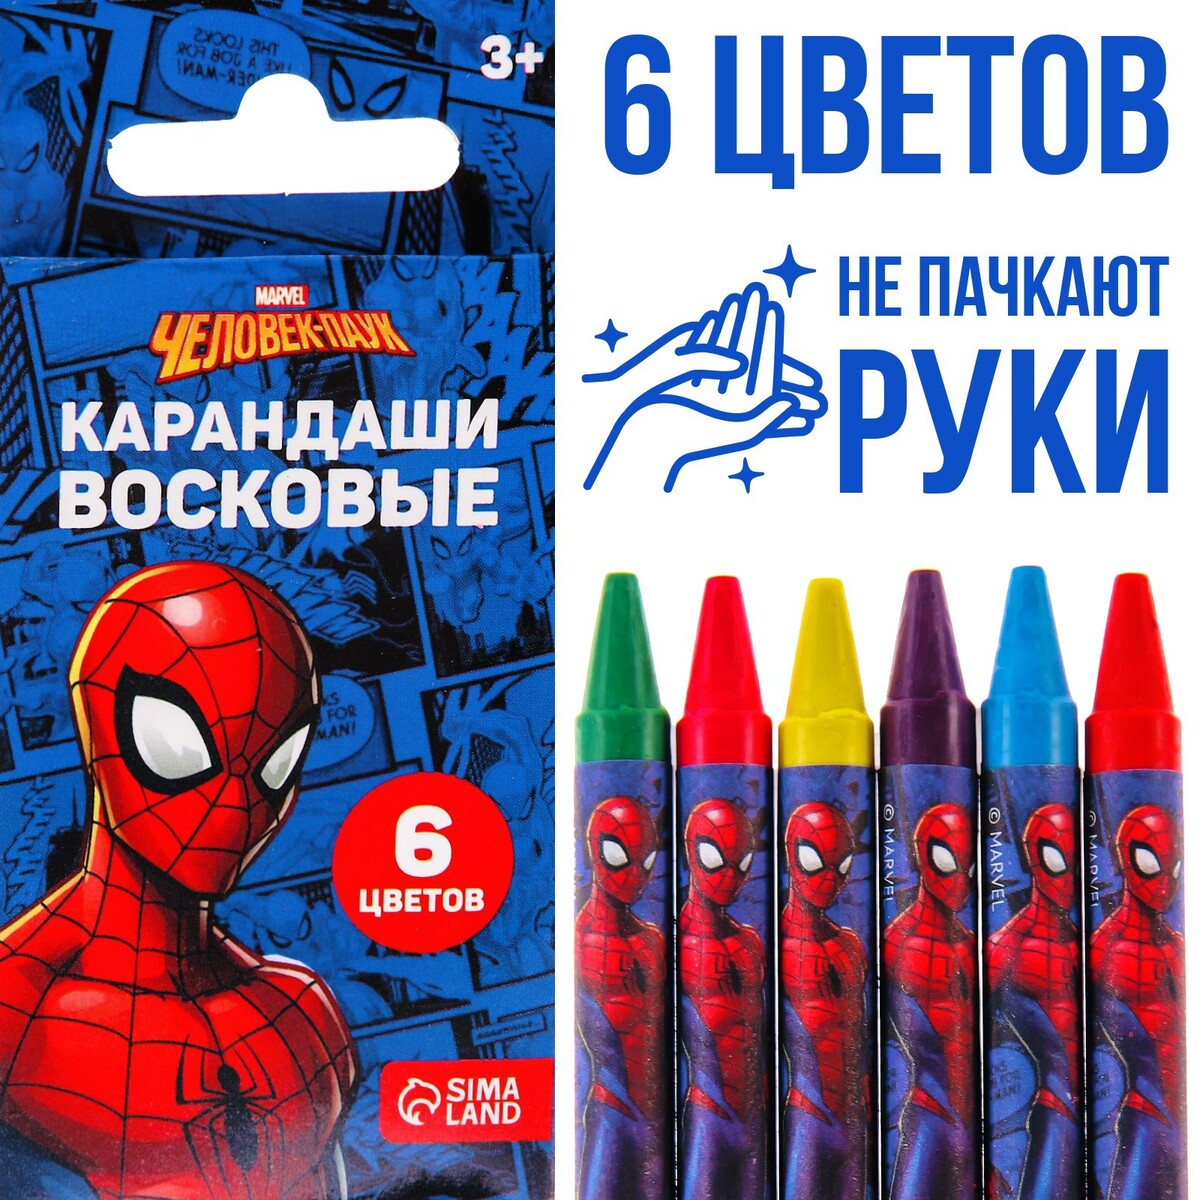 Восковые карандаши, набор 6 цветов, человек-паук человек сознание коммуникация интернет